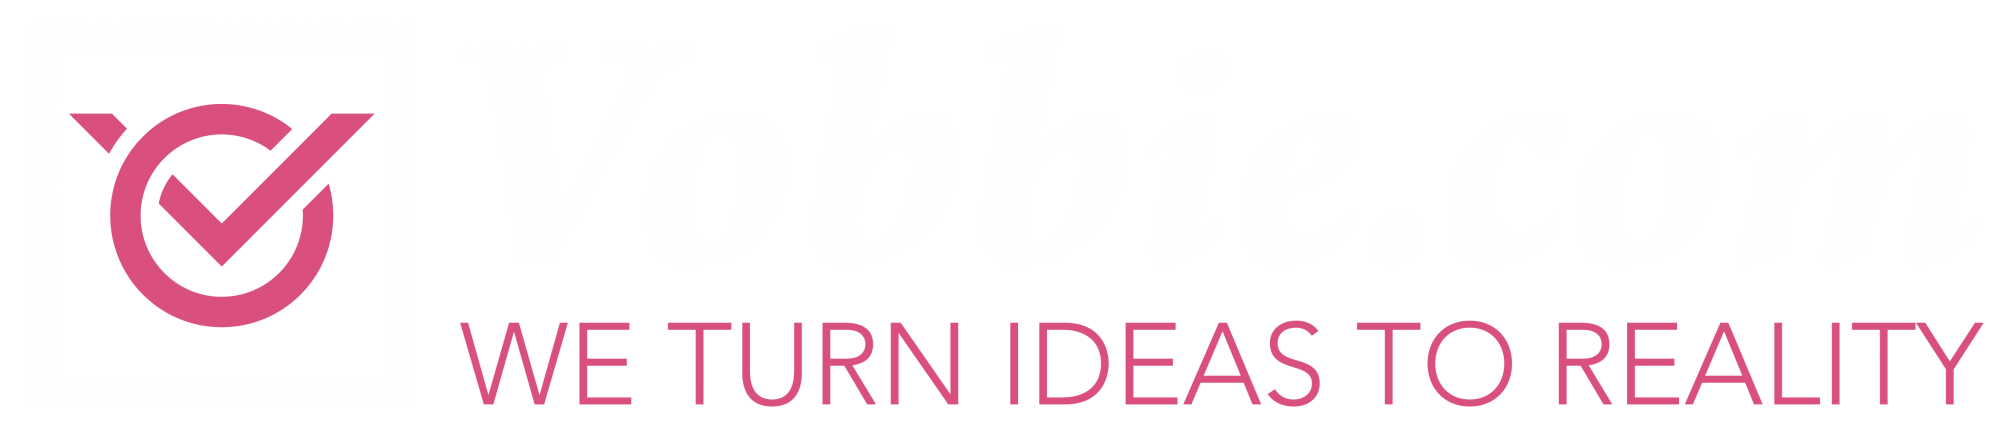 vobbie-crowdfunding-software